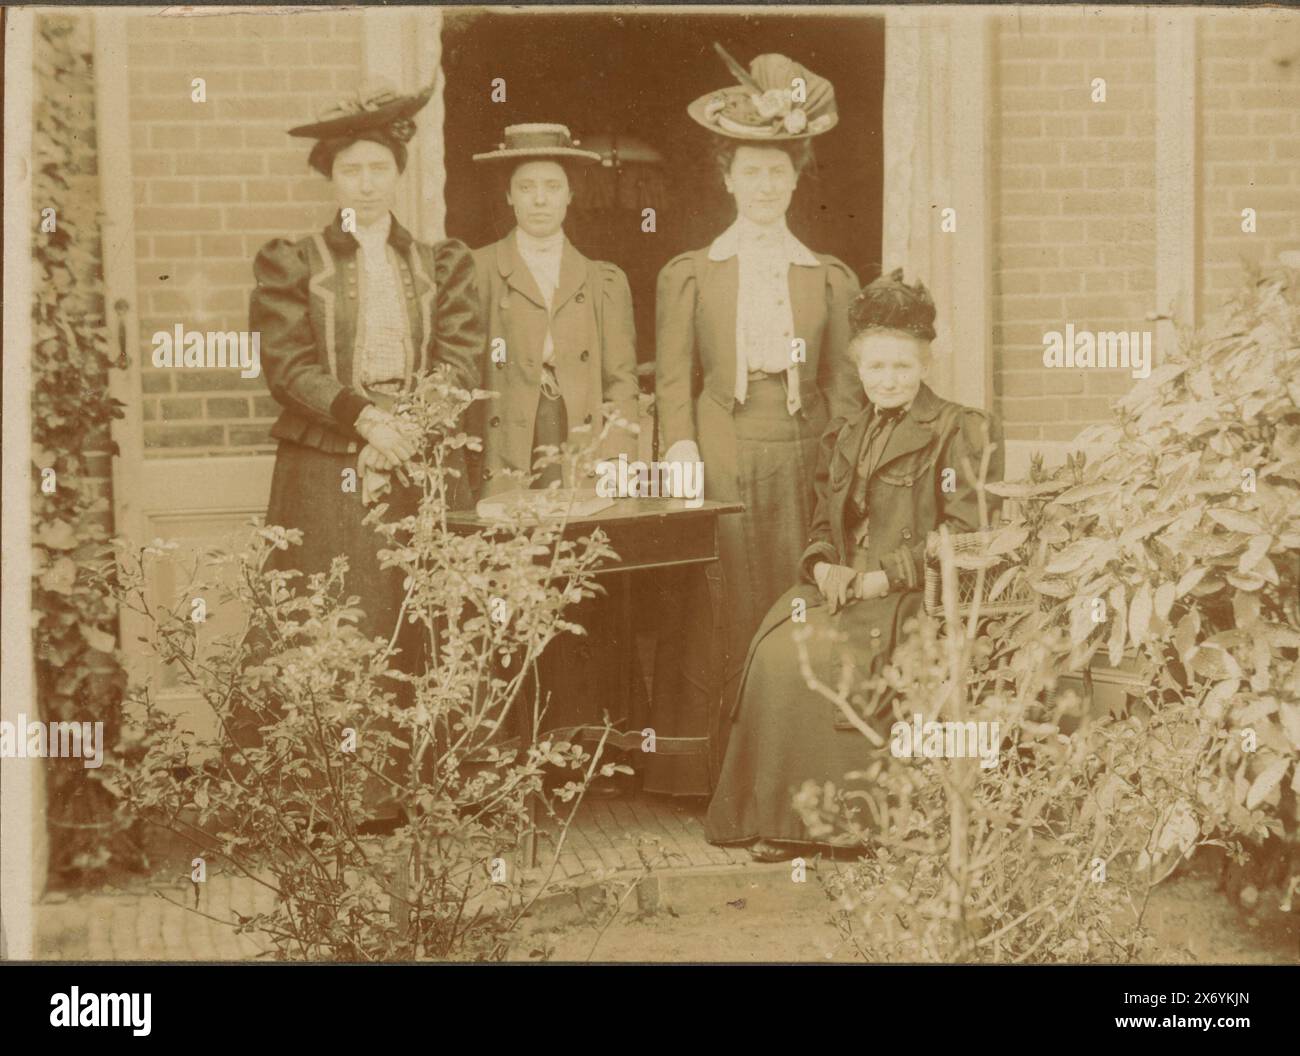 Ritratto di gruppo di quattro donne sconosciute in un giardino, fotografia, anonimo, Paesi Bassi, c. 1895 - c. 1905, carta baryta, altezza, 147 mm x larghezza, 178 mm Foto Stock